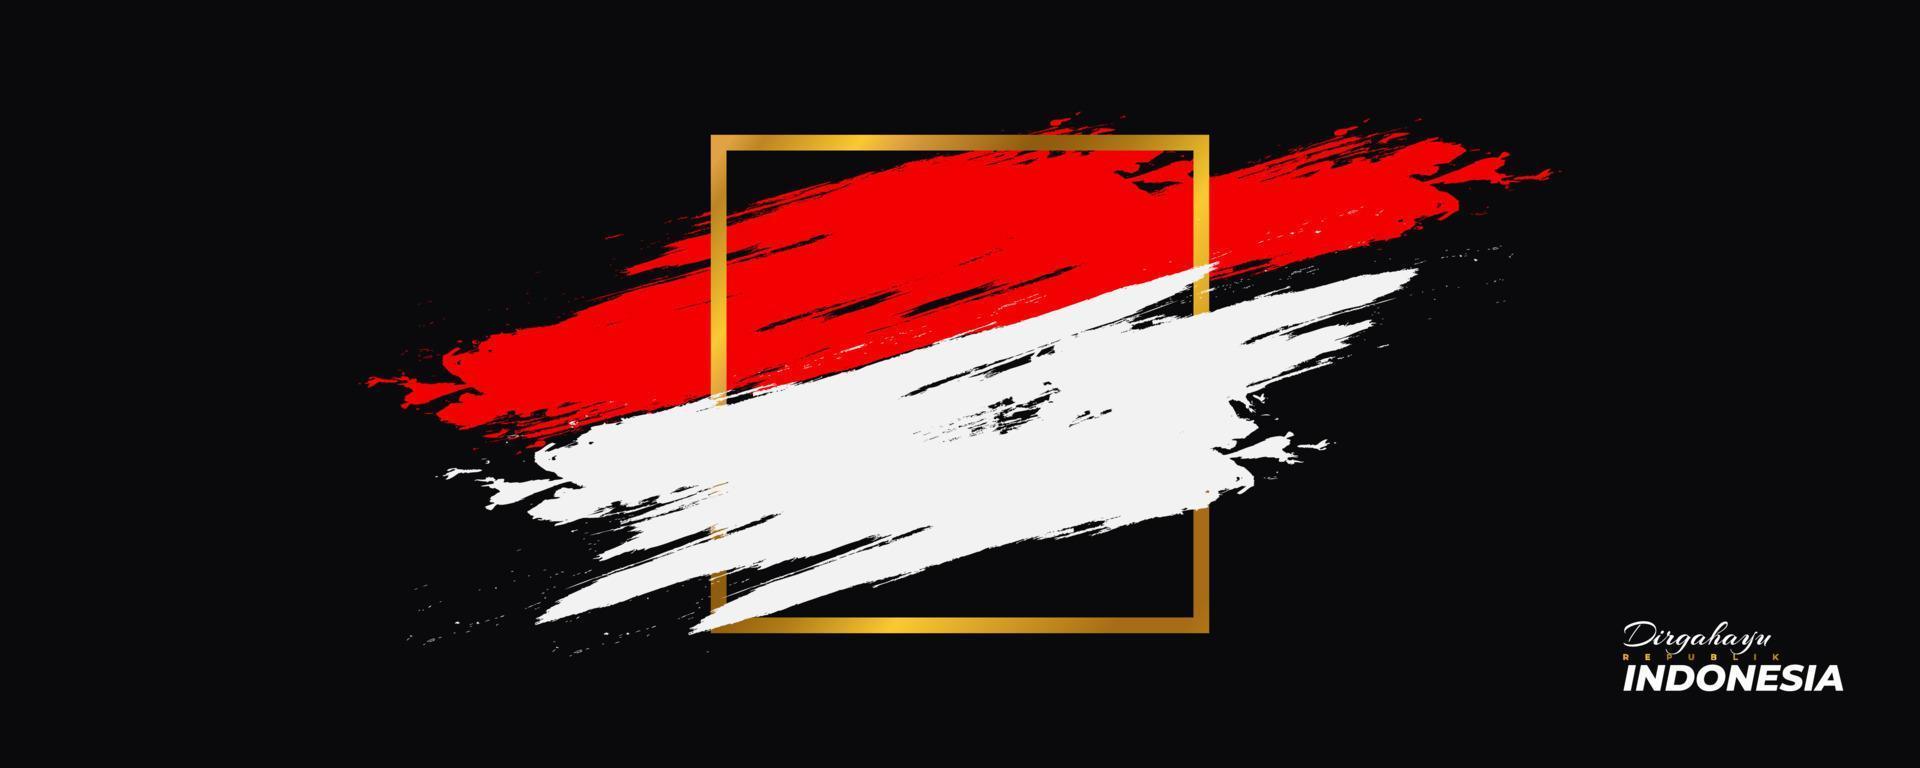 feliz día de la independencia de indonesia. Fondo de bandera roja y blanca de Indonesia con concepto de pincel. dirgahayu republik indonesia vector